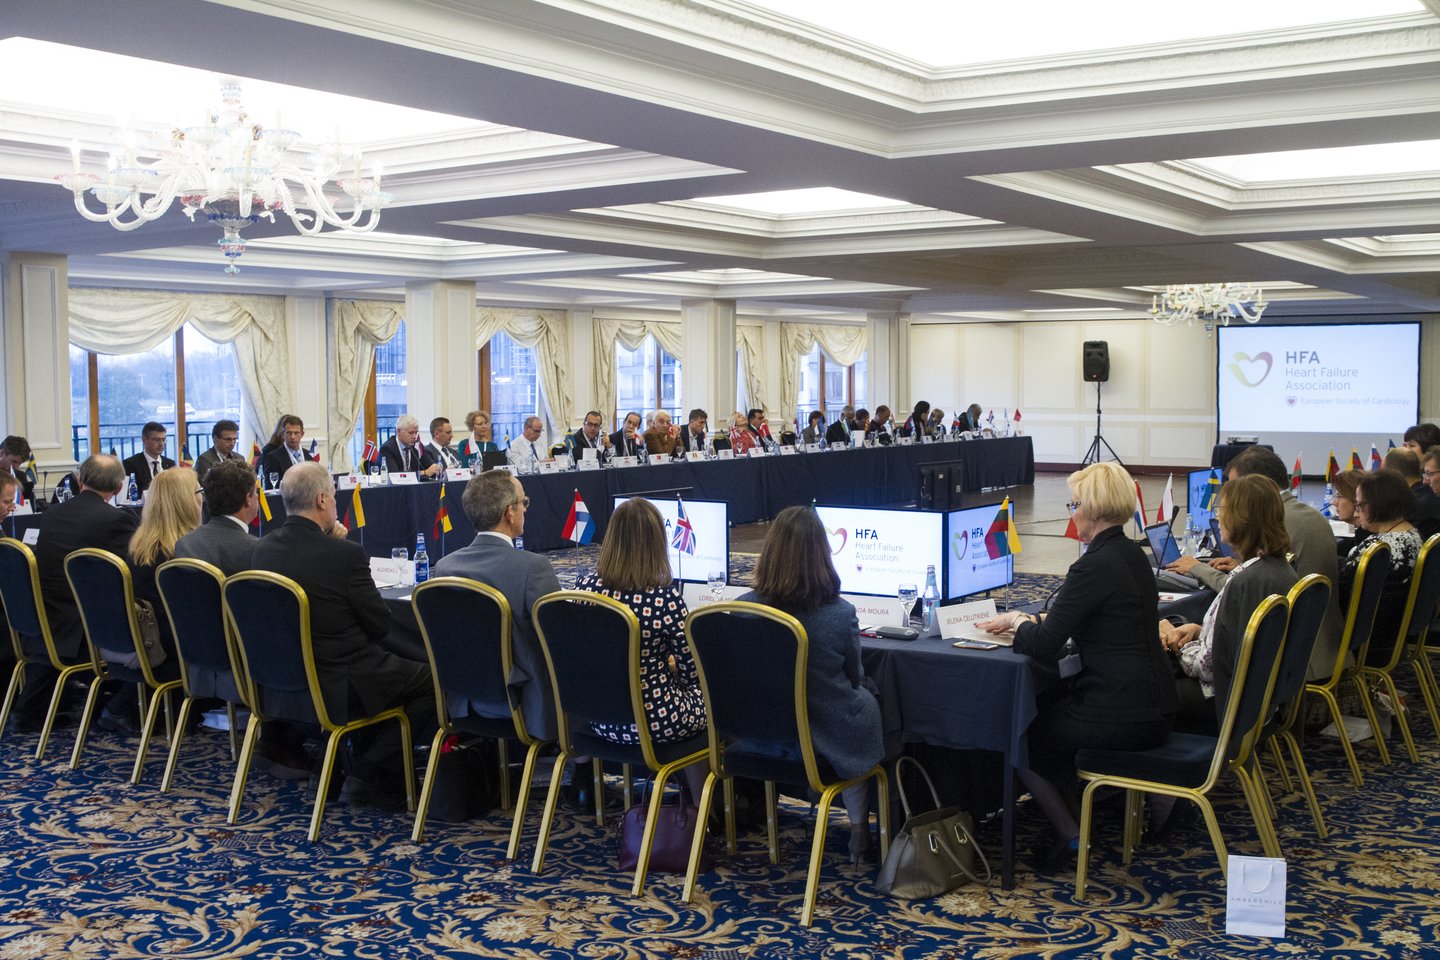   Savaitgalį Vilniuje vykusio aukščiausio lygio Europos Nacionalinių širdies asociacijų atstovų susitikimo akimirkos.